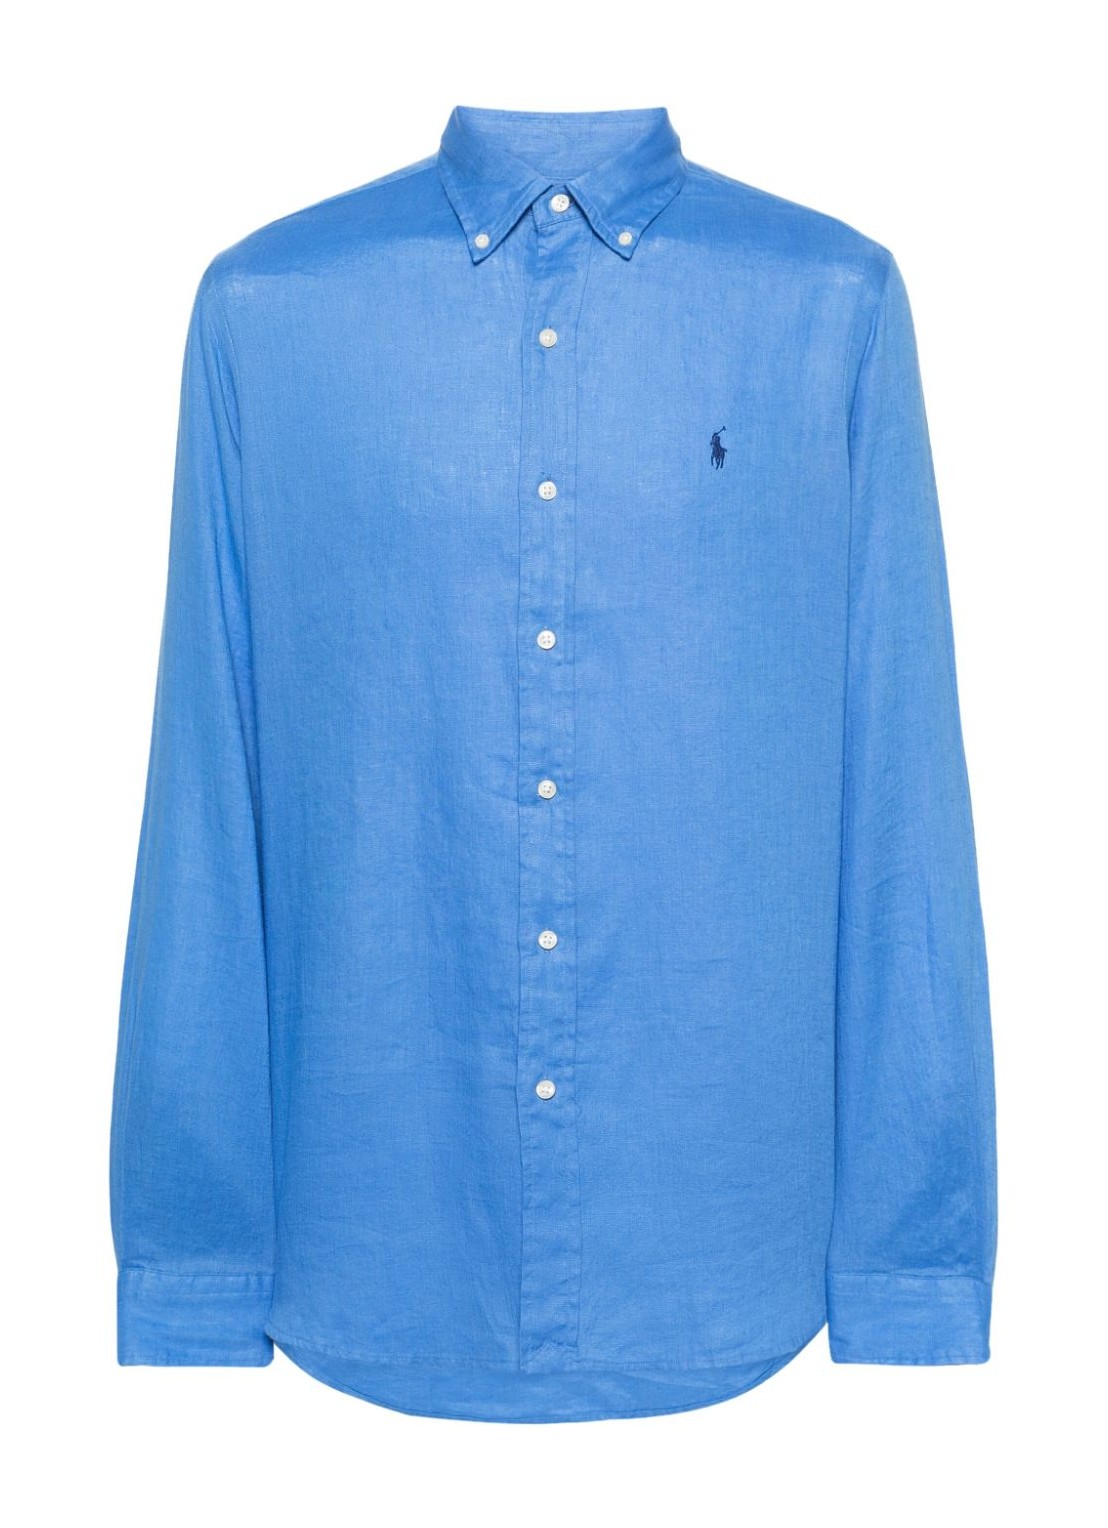 Camiseria polo ralph lauren shirt man cubdppcs-long sleeve-sport shirt 710794141020 summer blue tall